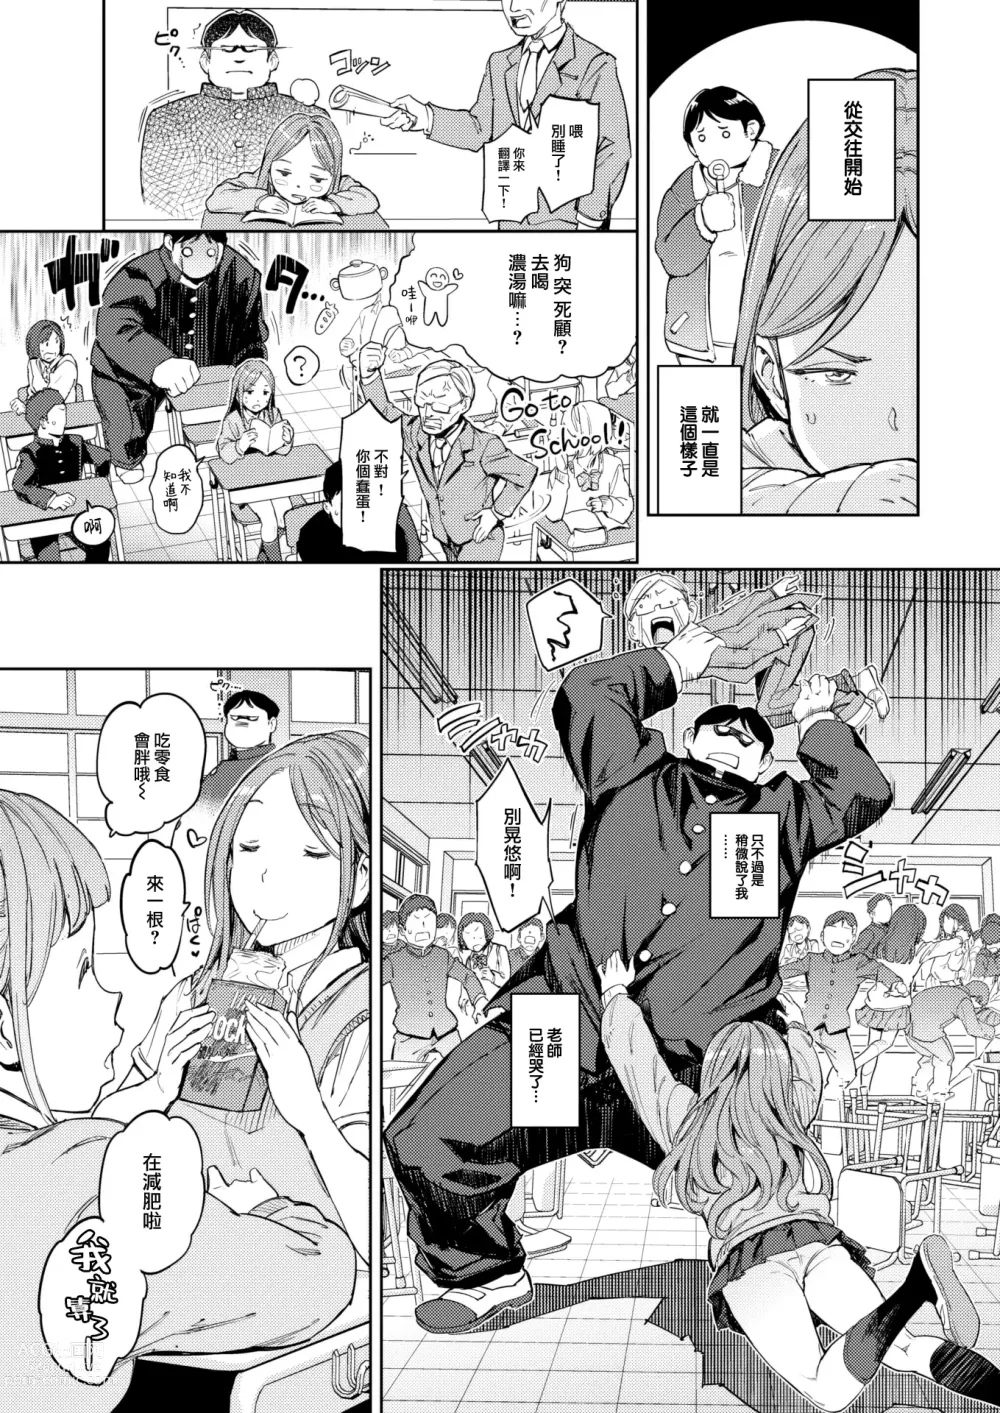 Page 4 of manga Aishi no Giant